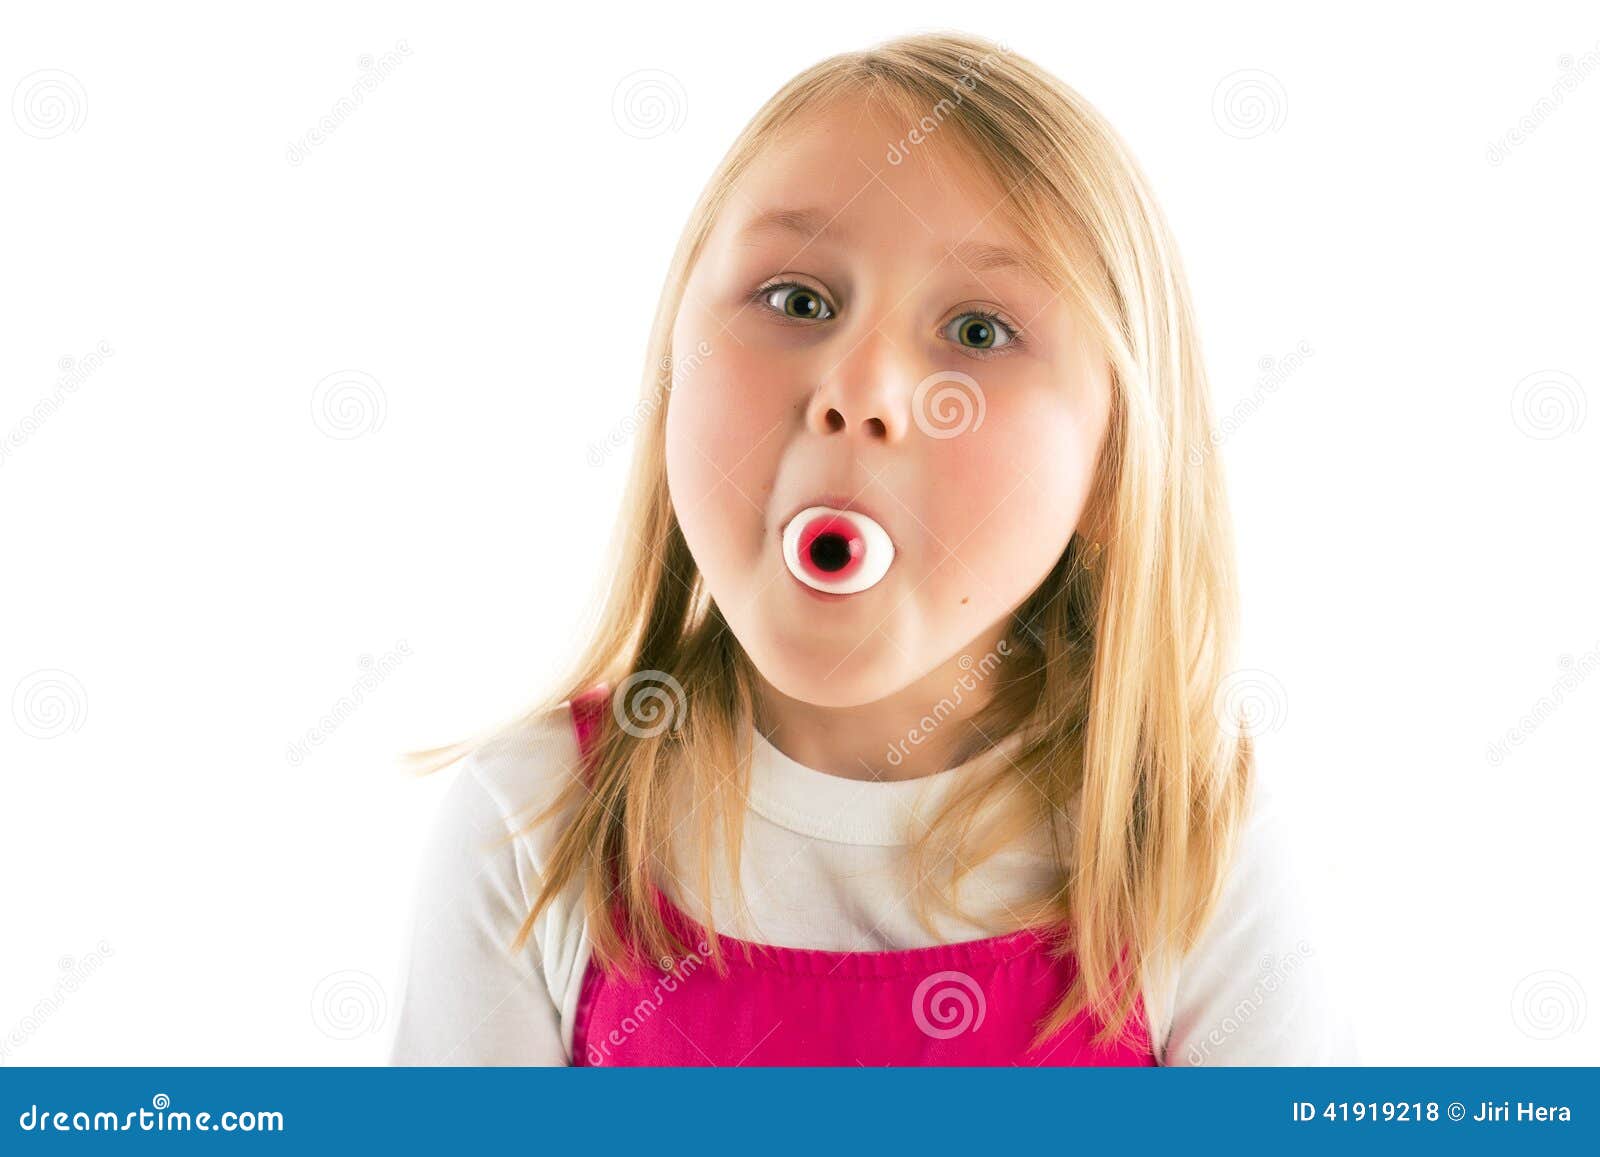 юной девочке сперму в рот фото 28